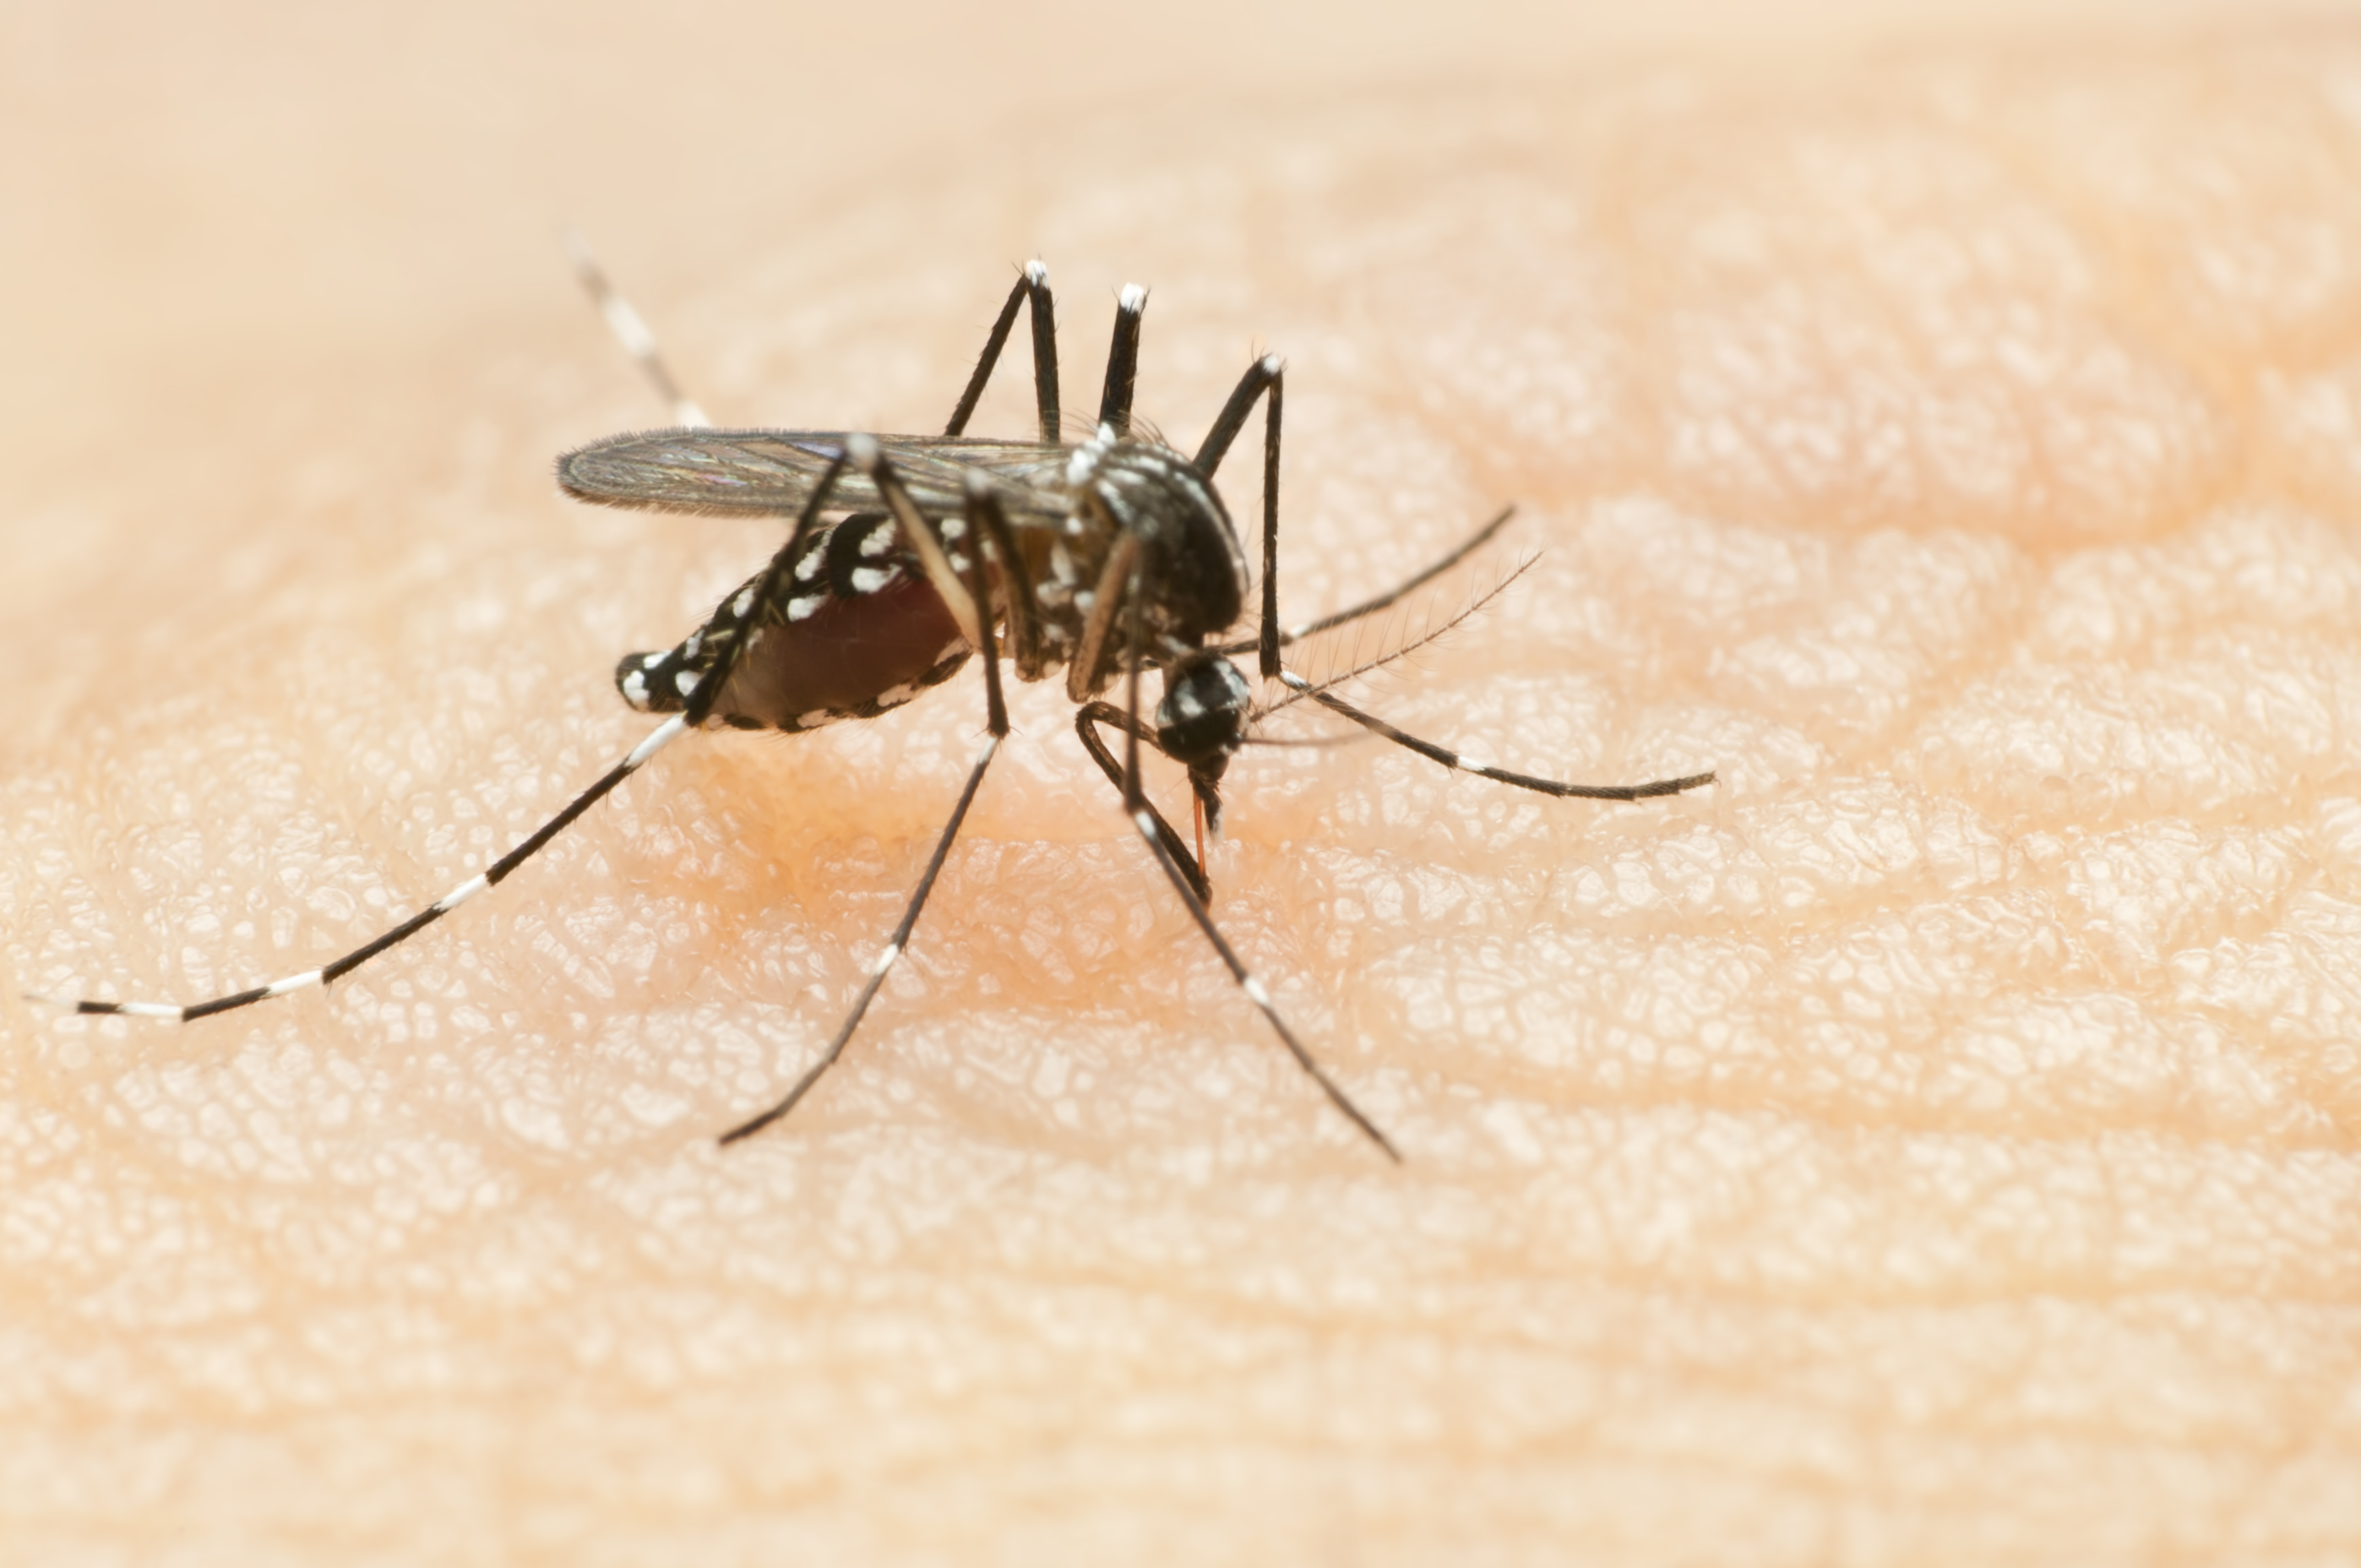 Epidemia de dengue en Argentina: aún se reportan más de 5.000 casos por semana